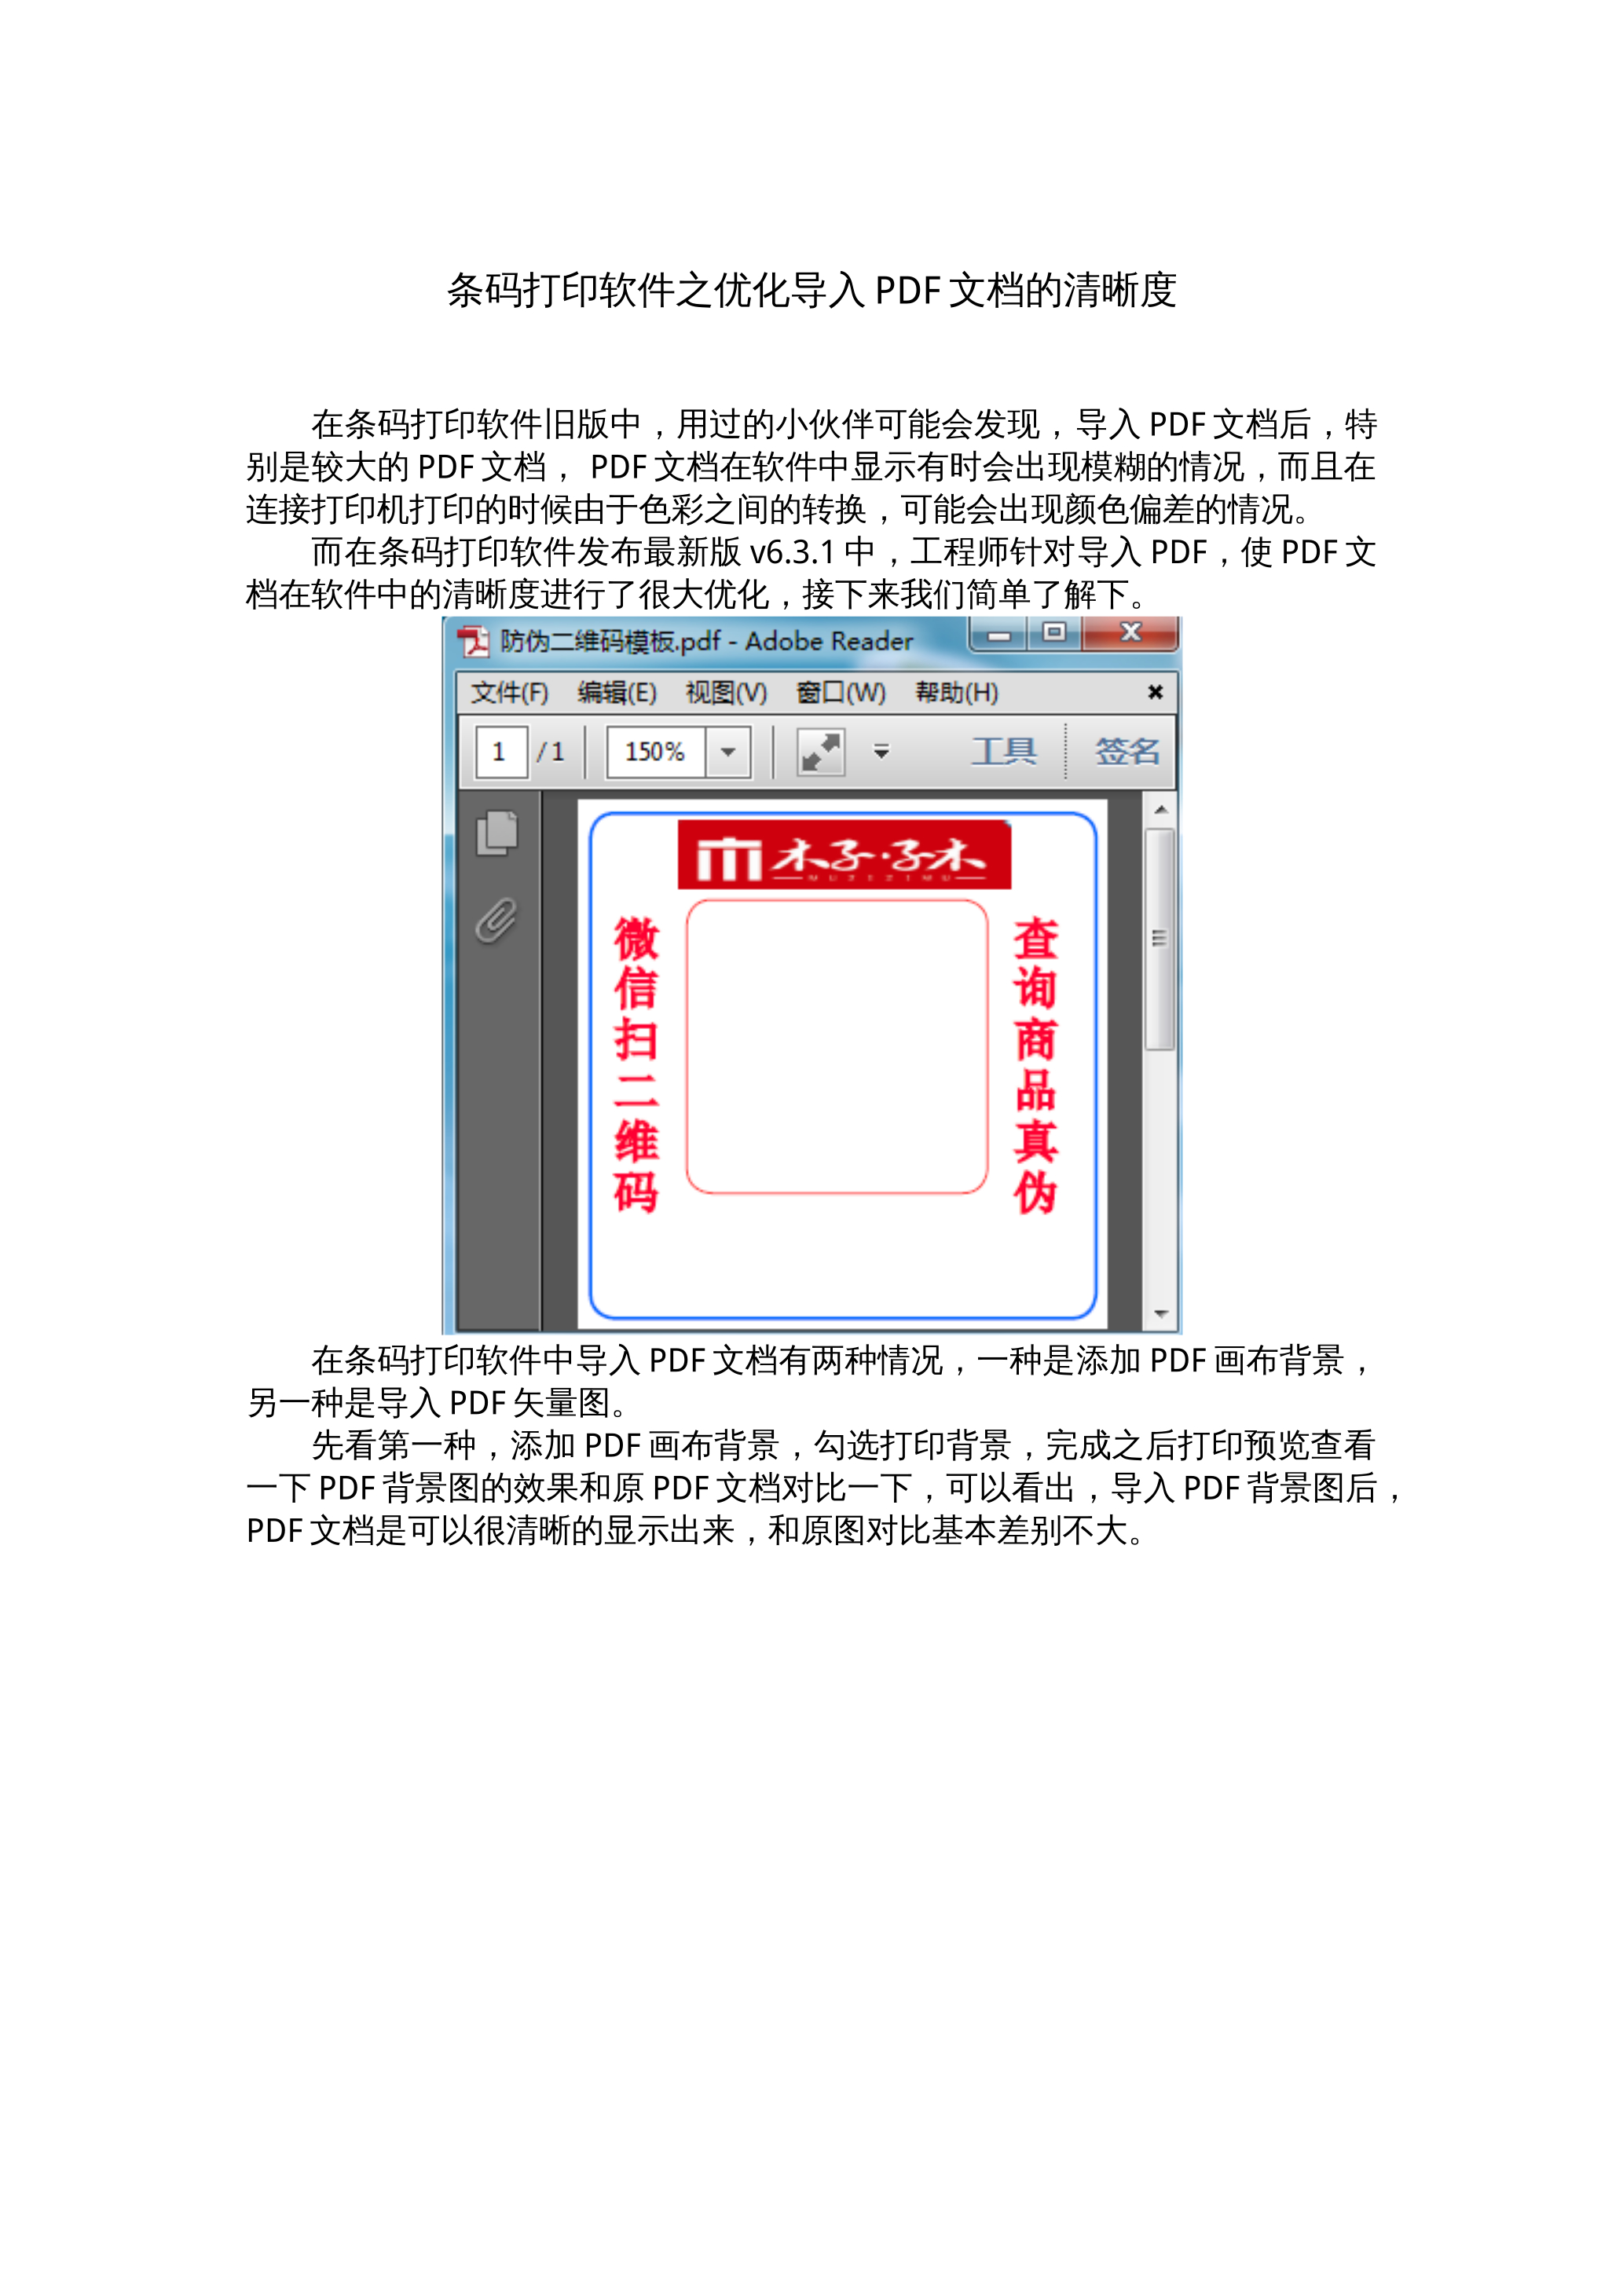 条码打印软件之优化导入PDF文档的清晰度 封面